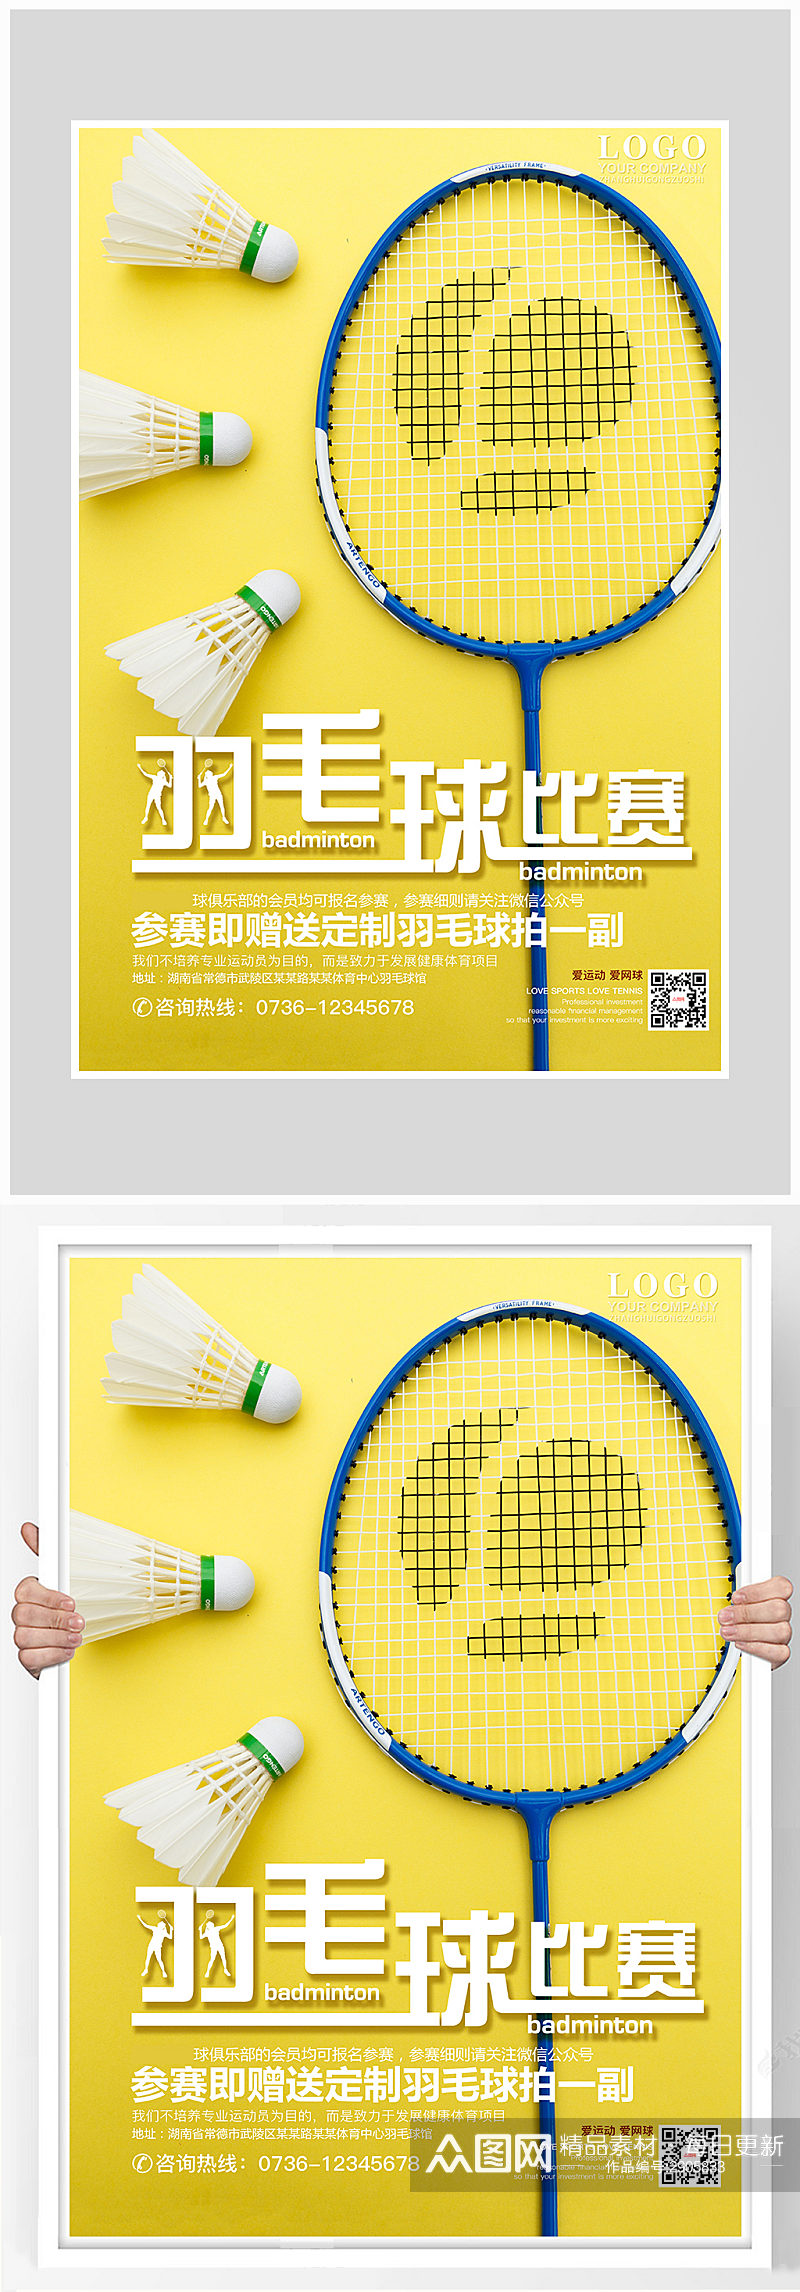 创意简约羽毛球比赛海报设计素材